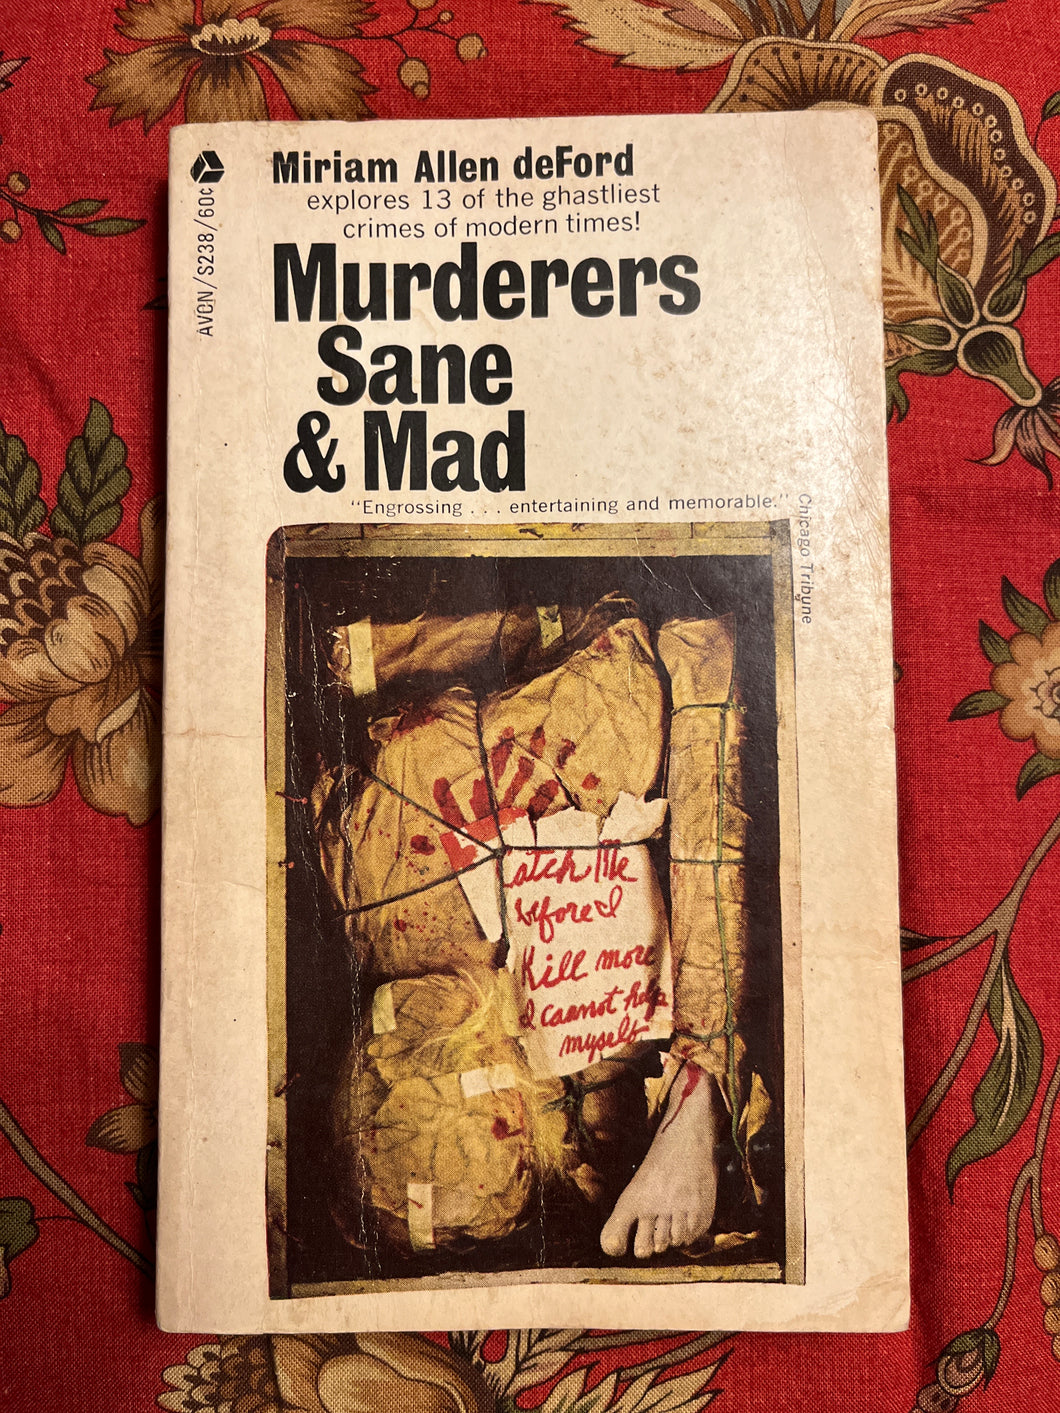 Murderers Sane & Mad